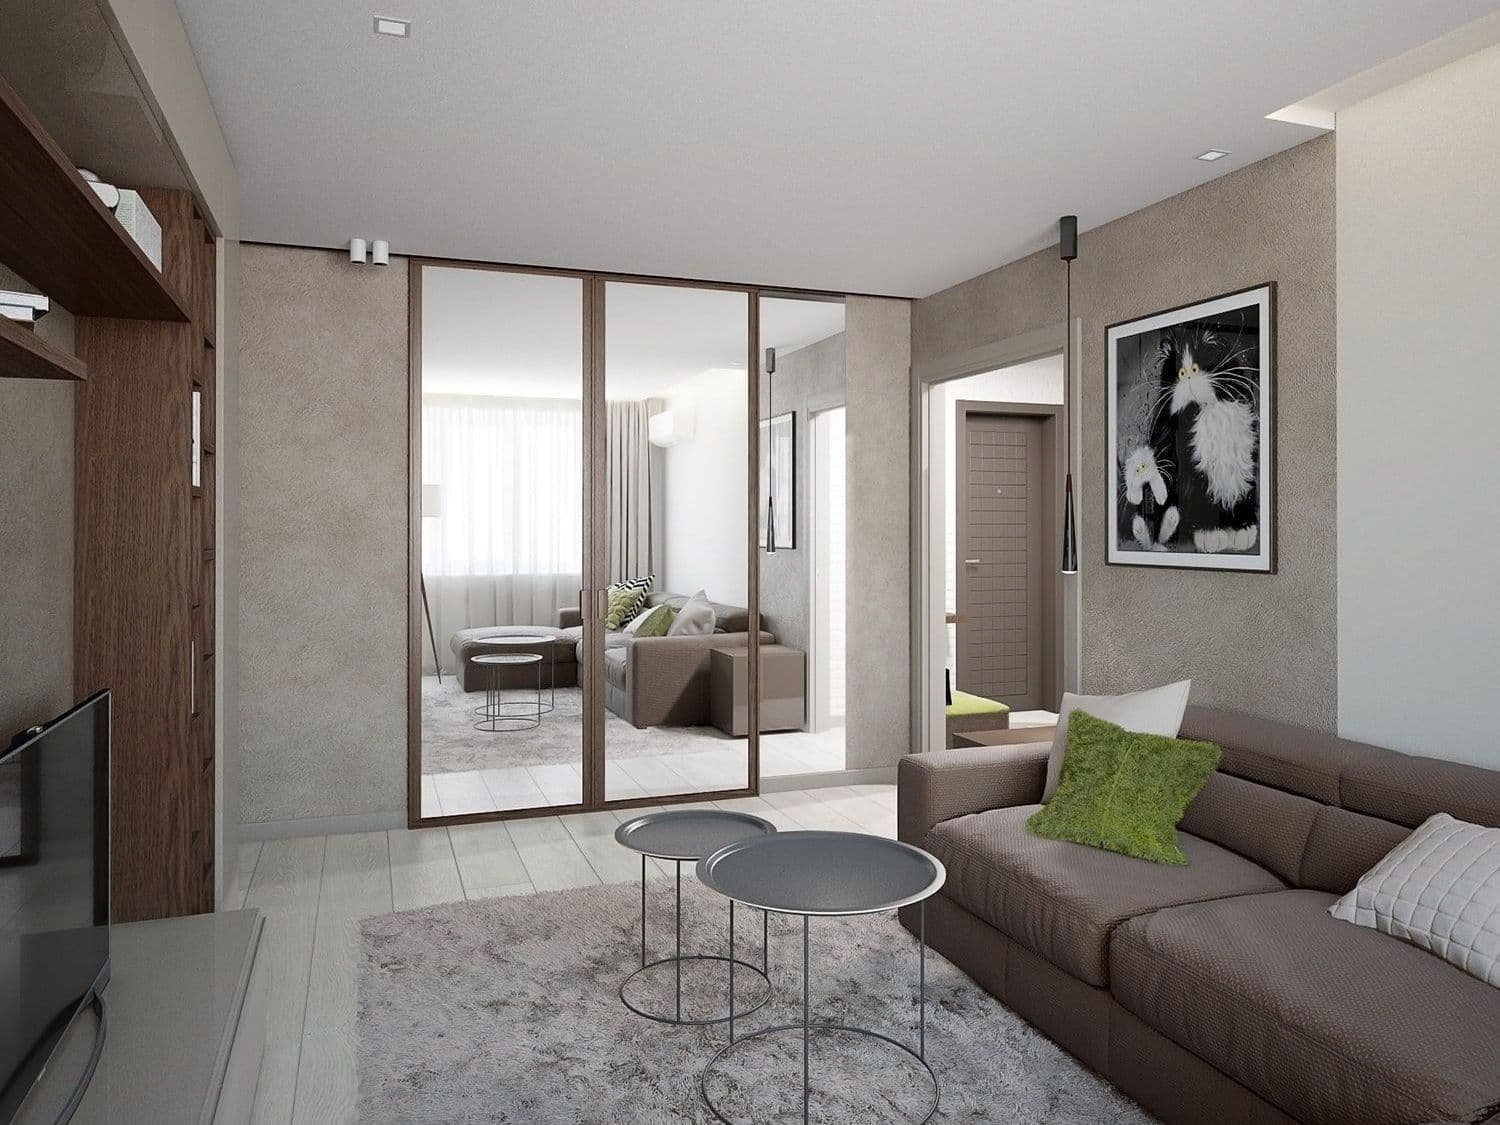 Дизайн современной гостиной с простым дизайном, декоративной штукатуркой, угловым диваном, шкафом купе, зеркальными дверями, в спокойных тонах, вид 3